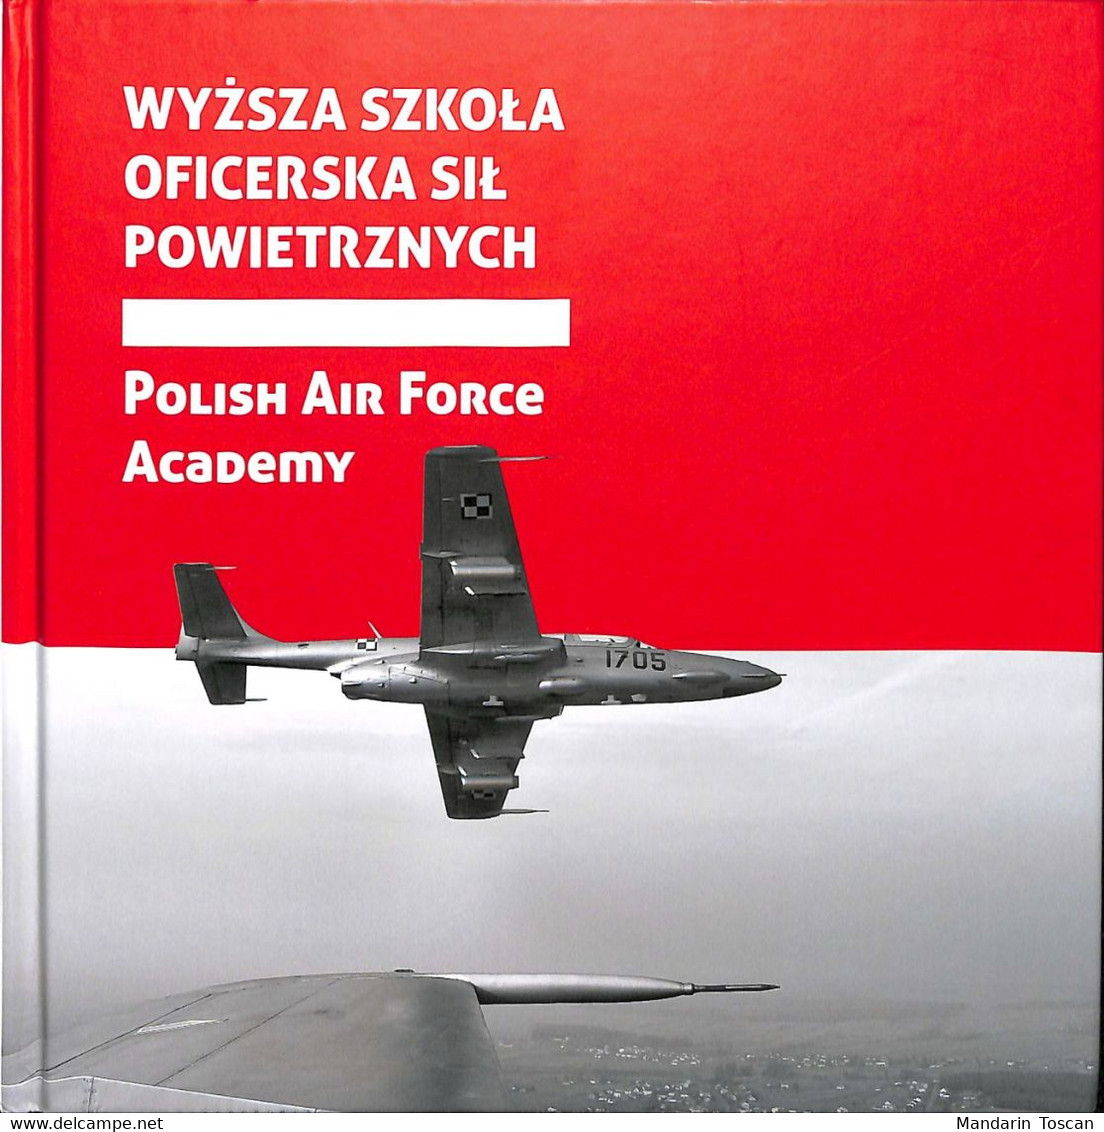 Polish Air Force Academy - Wyzsza Szkola Oficerska Sil Powietrznych (2013) - Foreign Armies